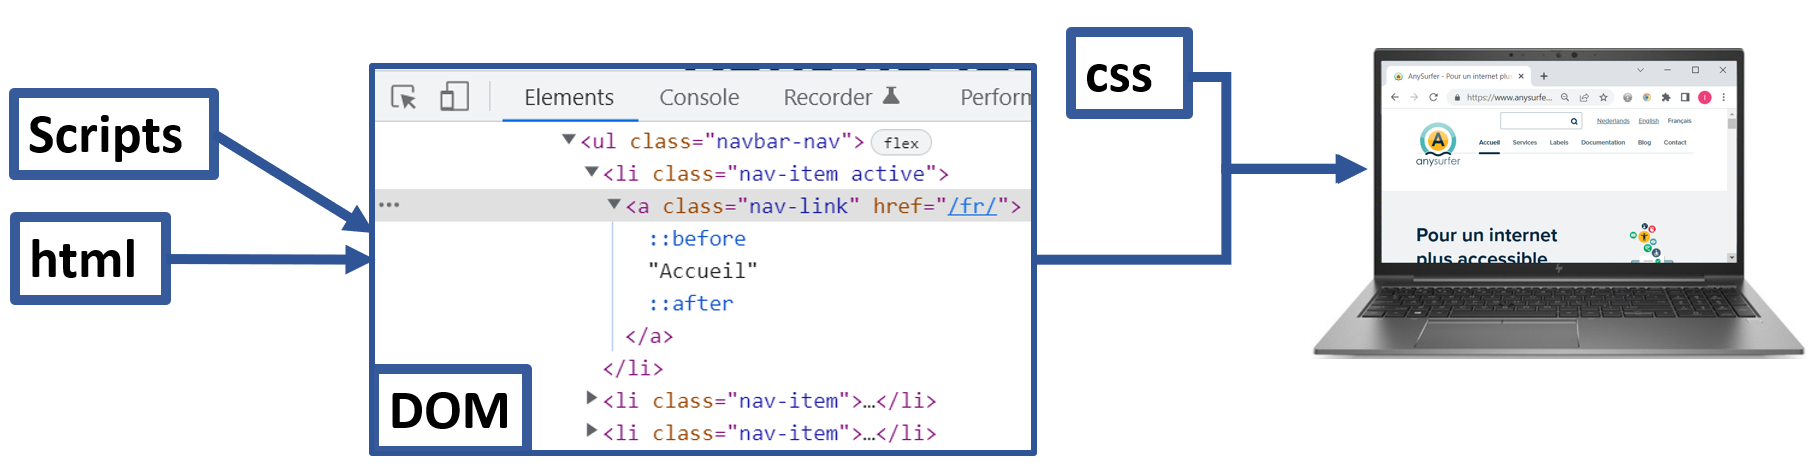 le code HTML et les scripts produisent le contenu du DOM qui est utilisé en combinaison avec le CSS pour afficher le site sur l'écran du PC